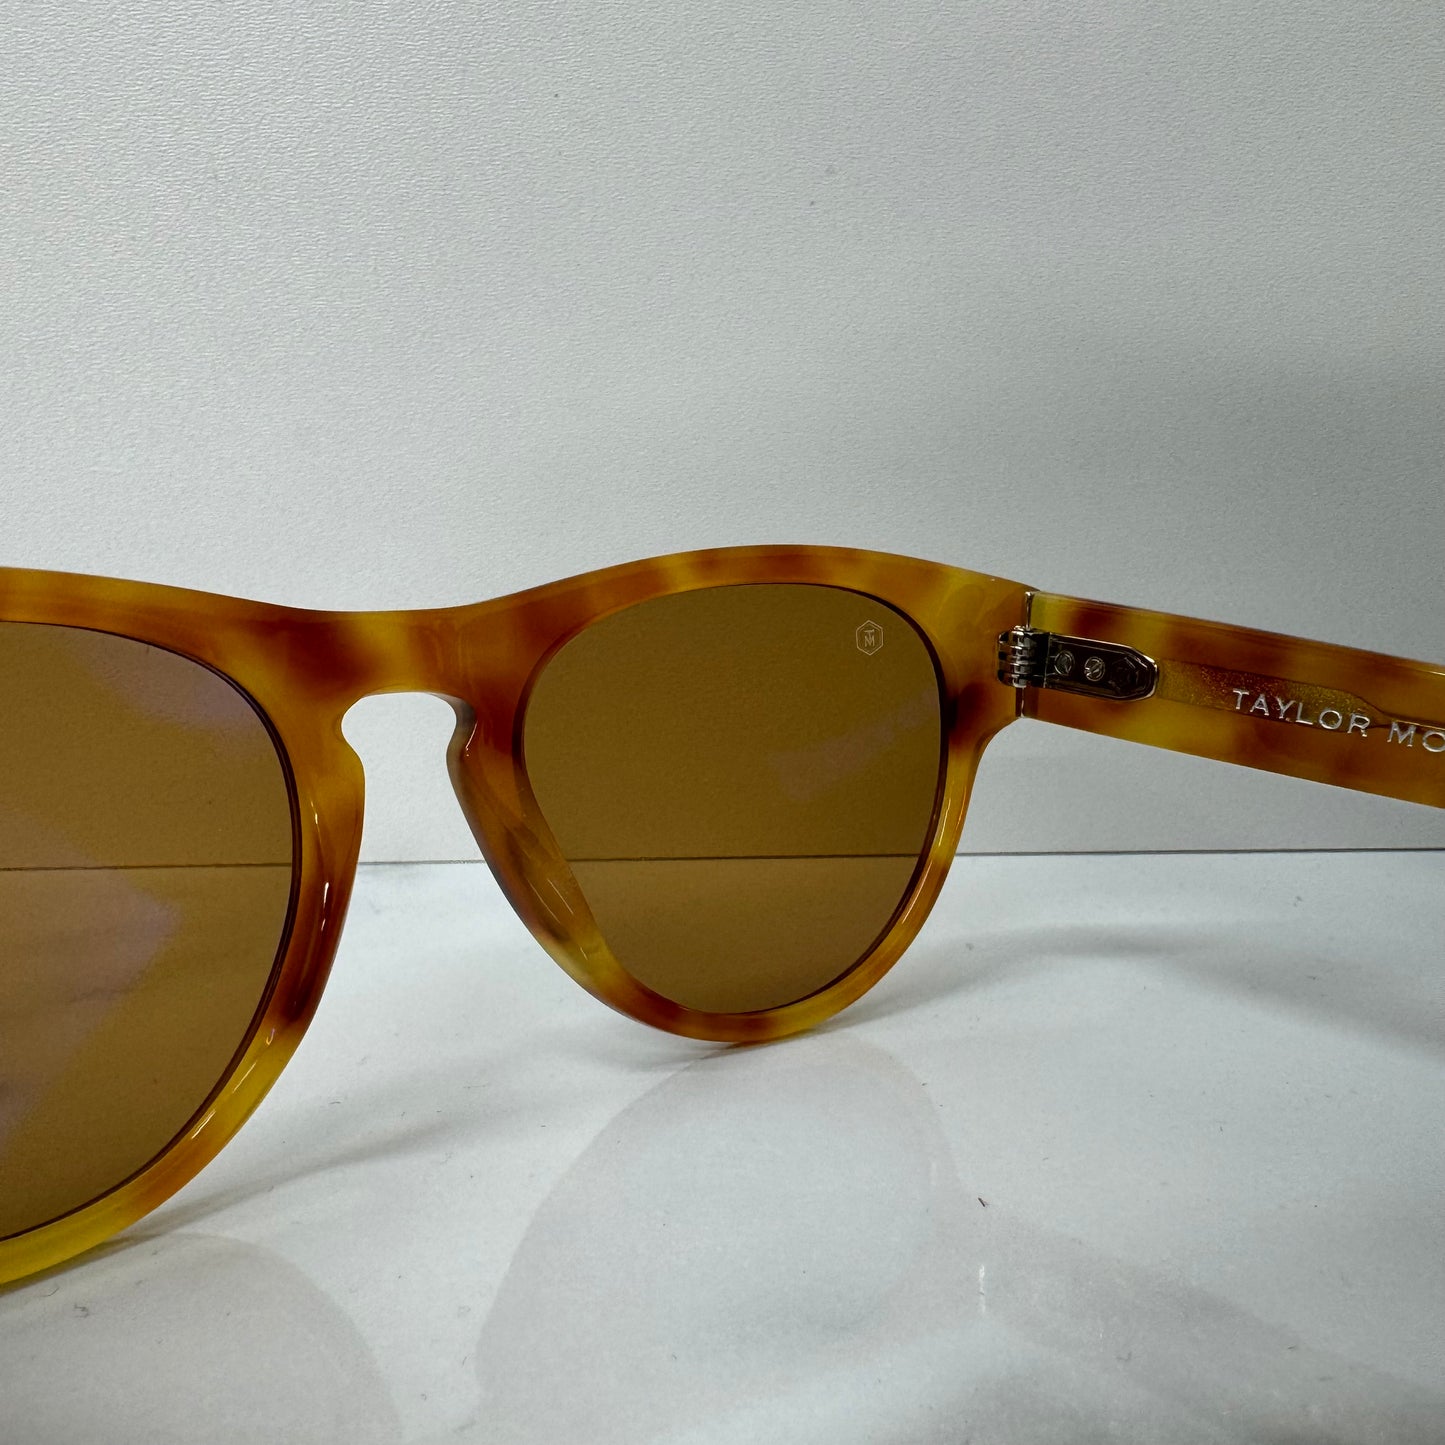 Taylor Morris Jude Brown Sunglasses - 32082 C4